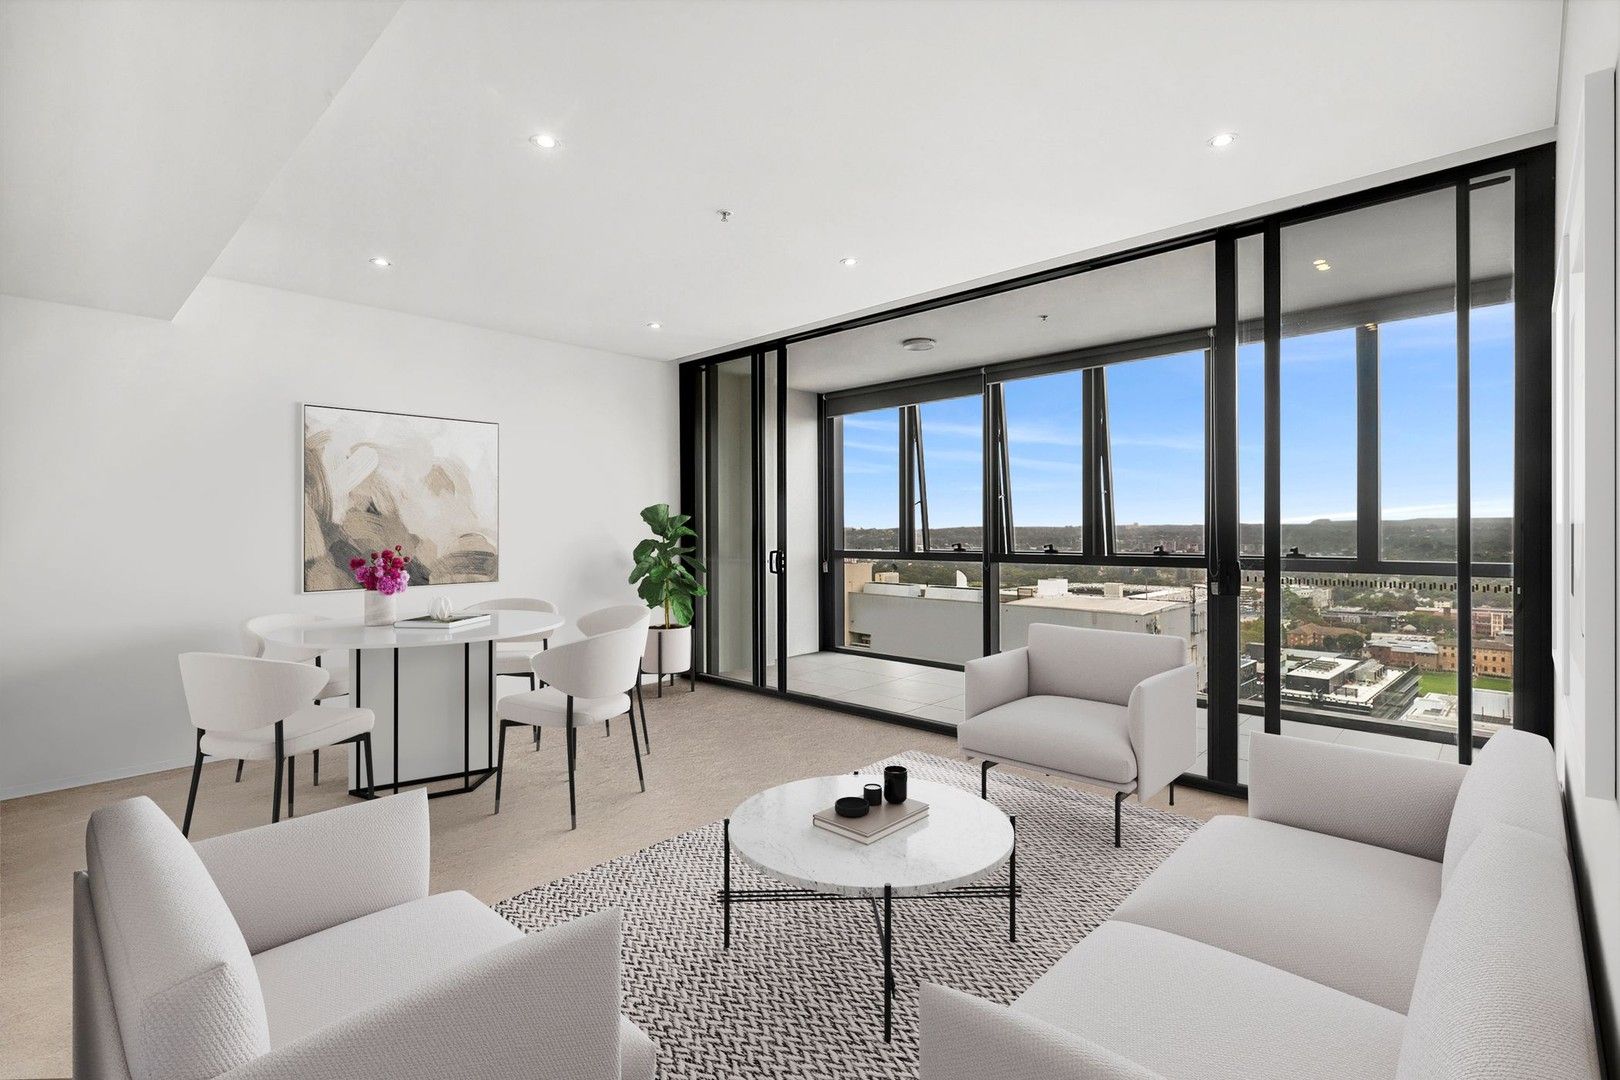 3 bedrooms Apartment / Unit / Flat in 2606/45 Macquarie Street PARRAMATTA NSW, 2150